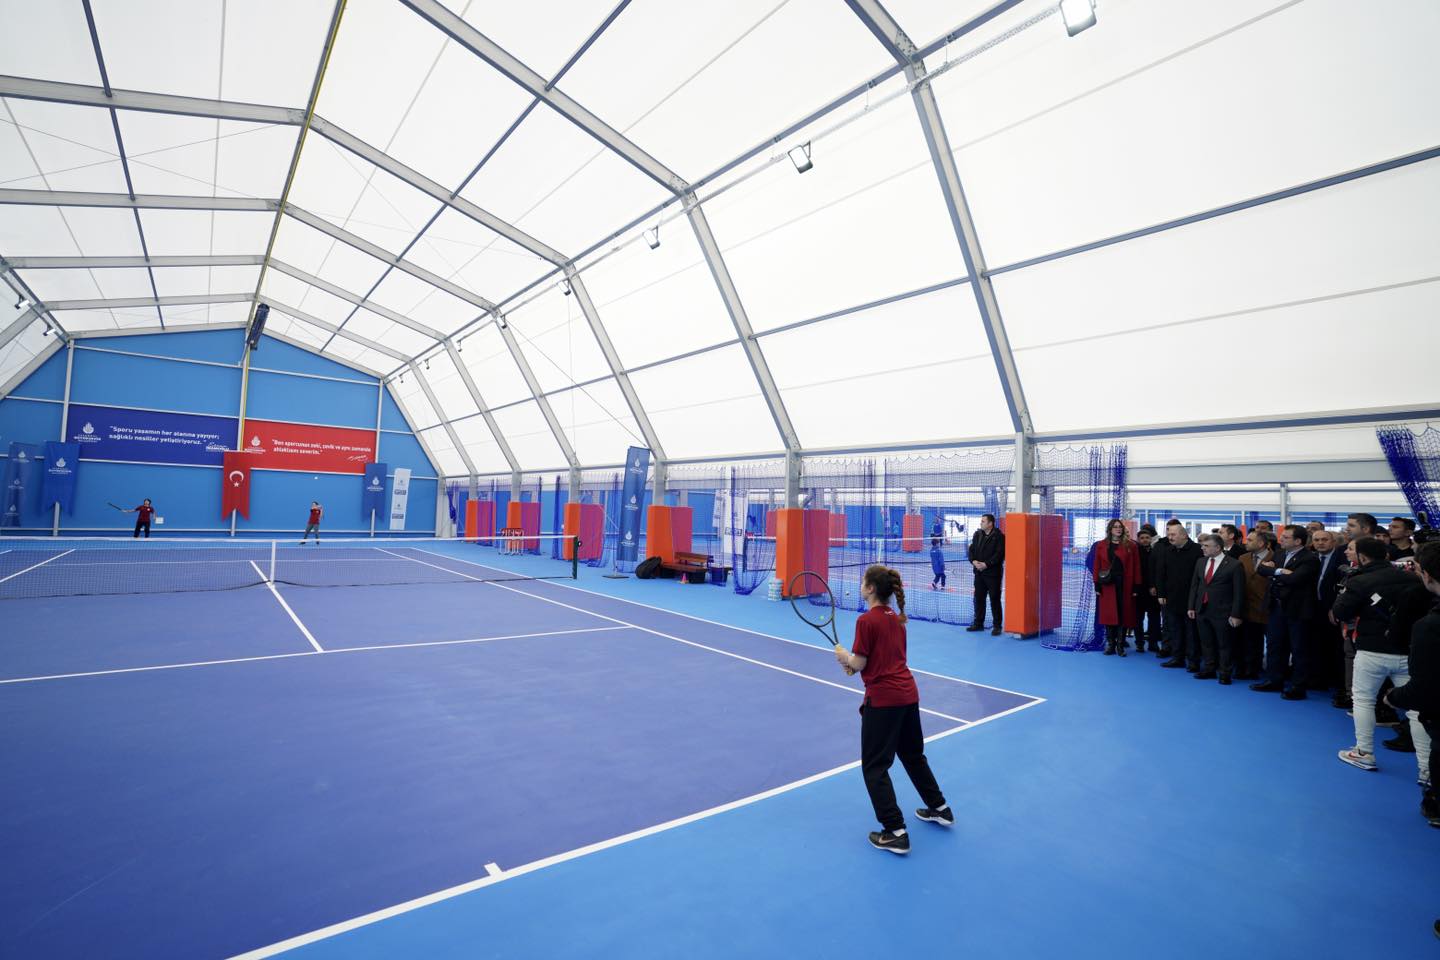 Indoor Tennis Court, Tennis Tent, Polygonal Tennis Hall